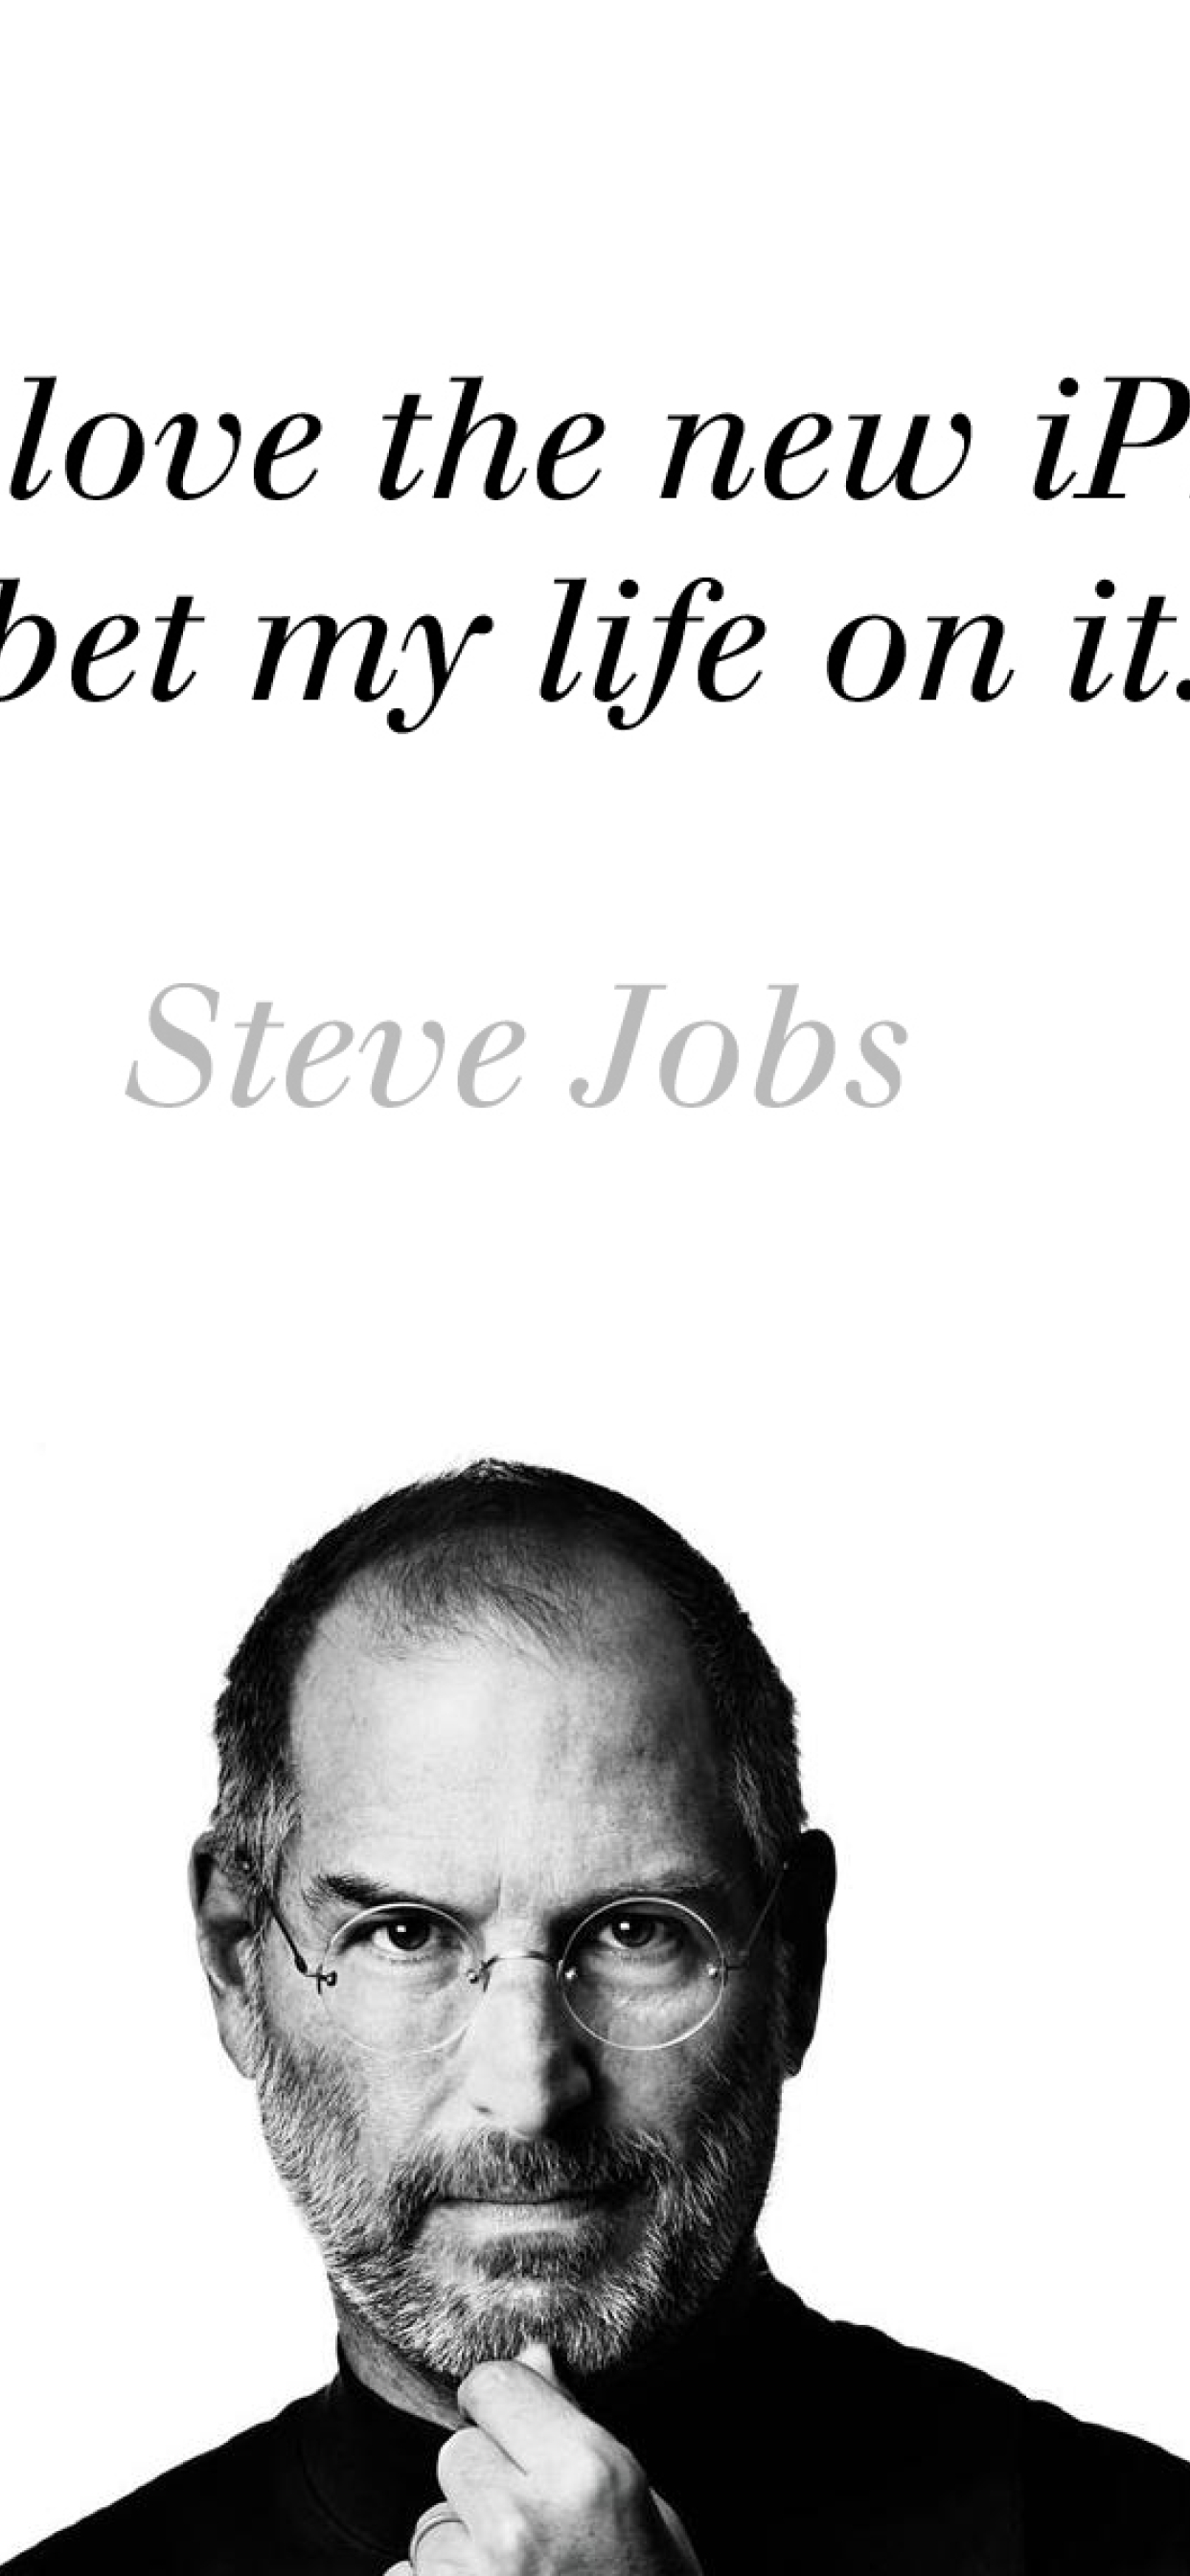 Steve jobs wallpaper | Steve jobs quotes, Steve jobs photo, Steve jobs